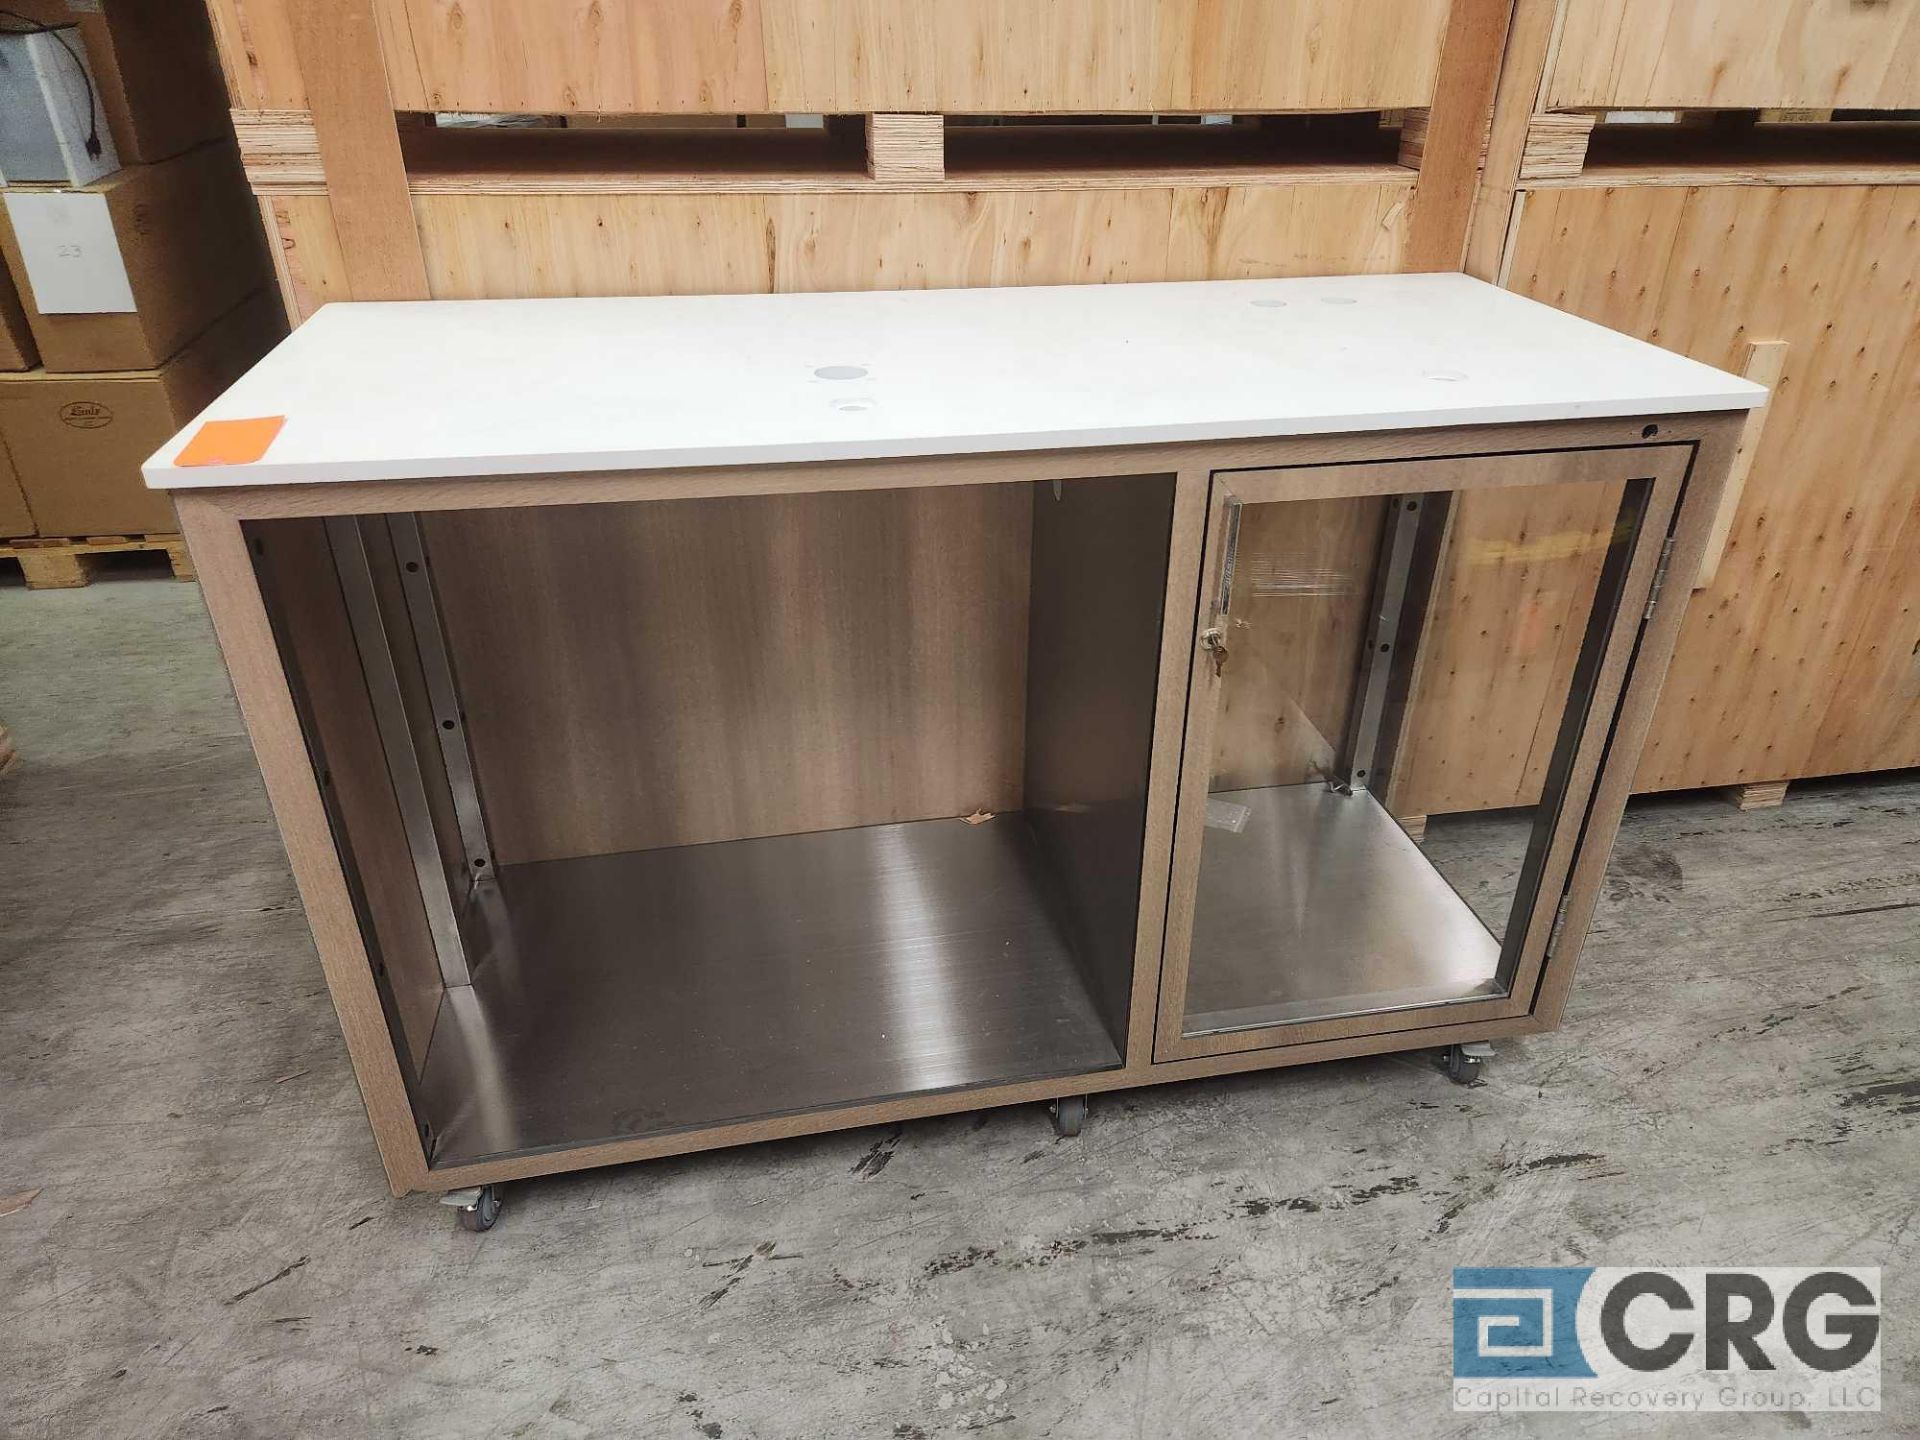 Ramler custom welded stainless steel framed portable bar serving stations